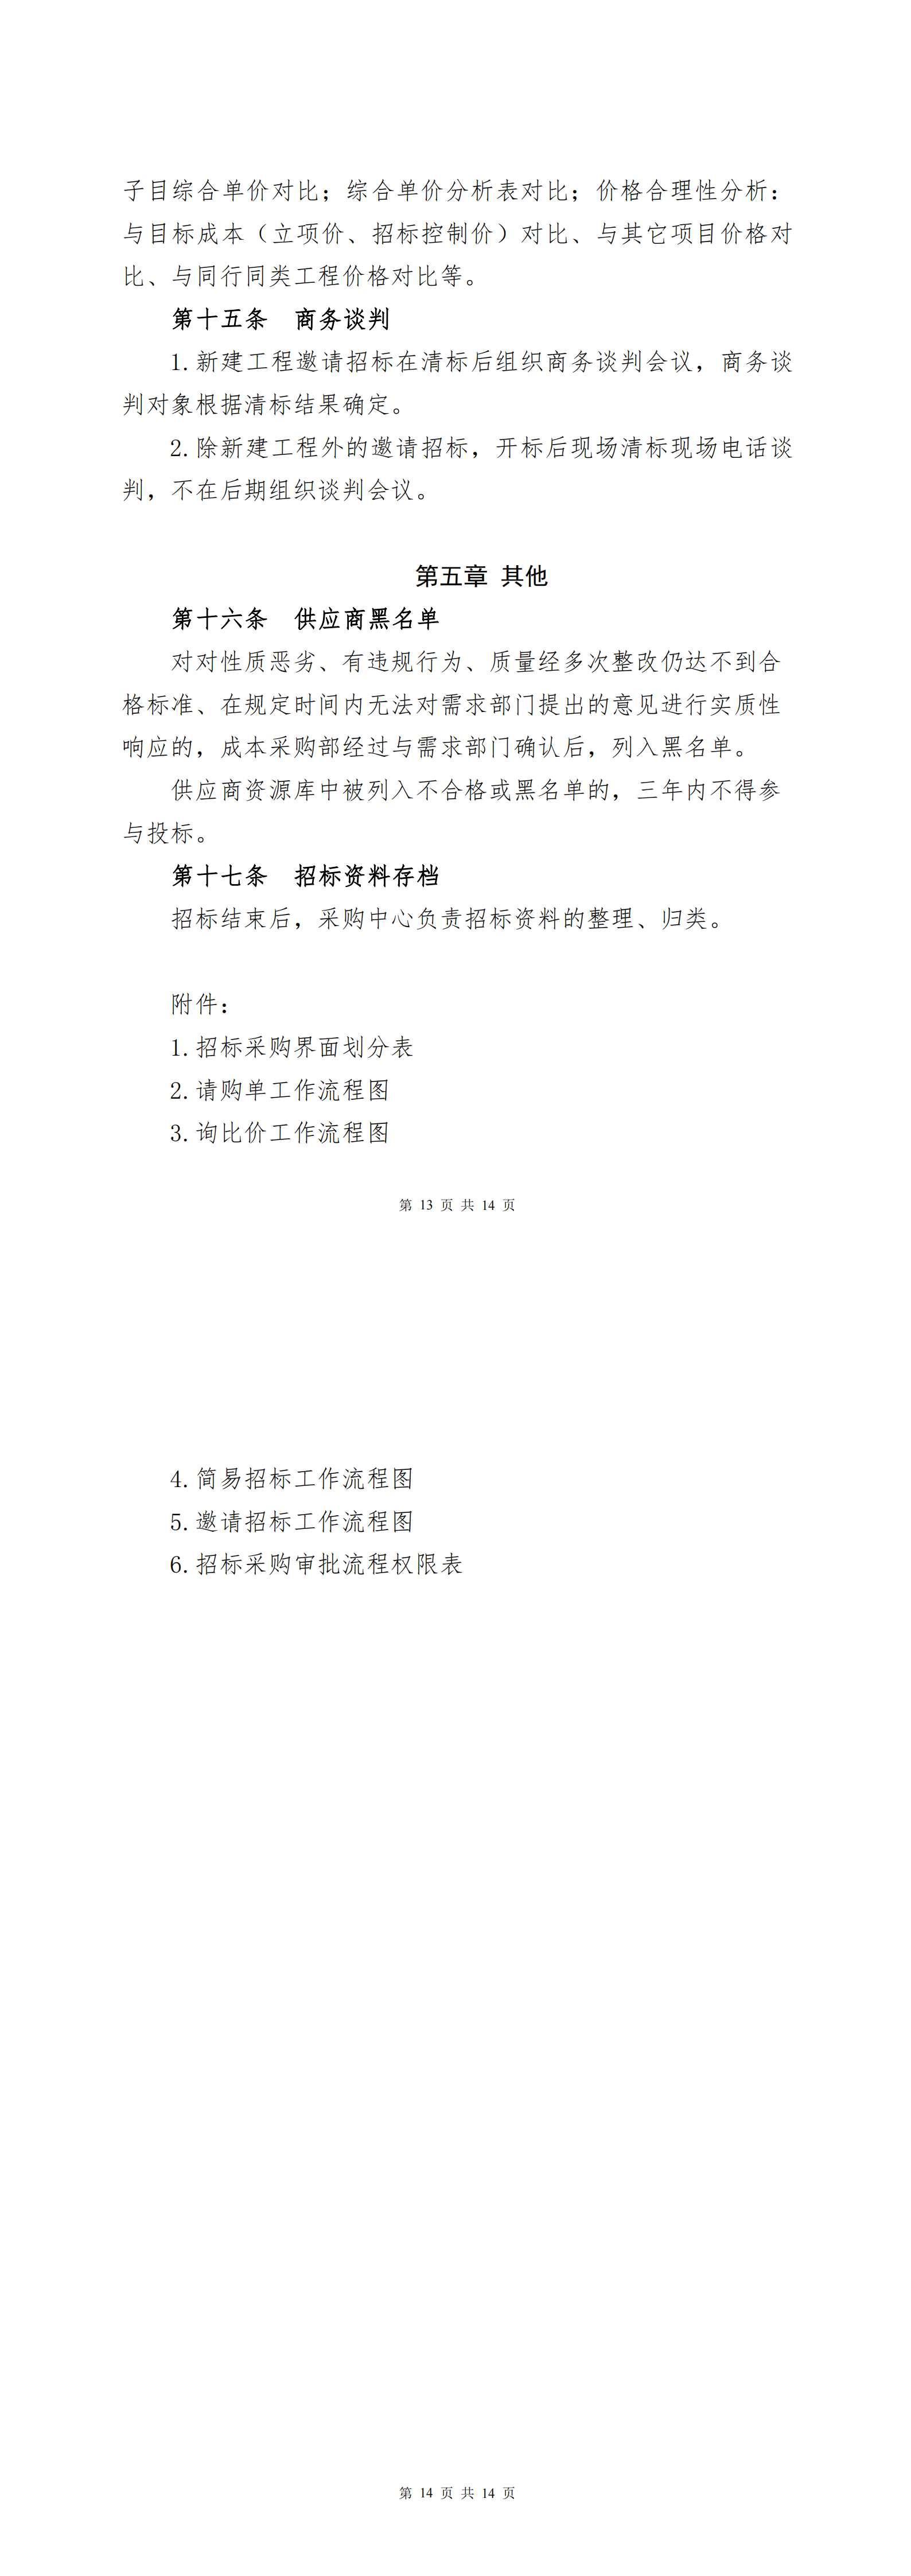 附件：《广州商学院招标采购管理制度》_01.png